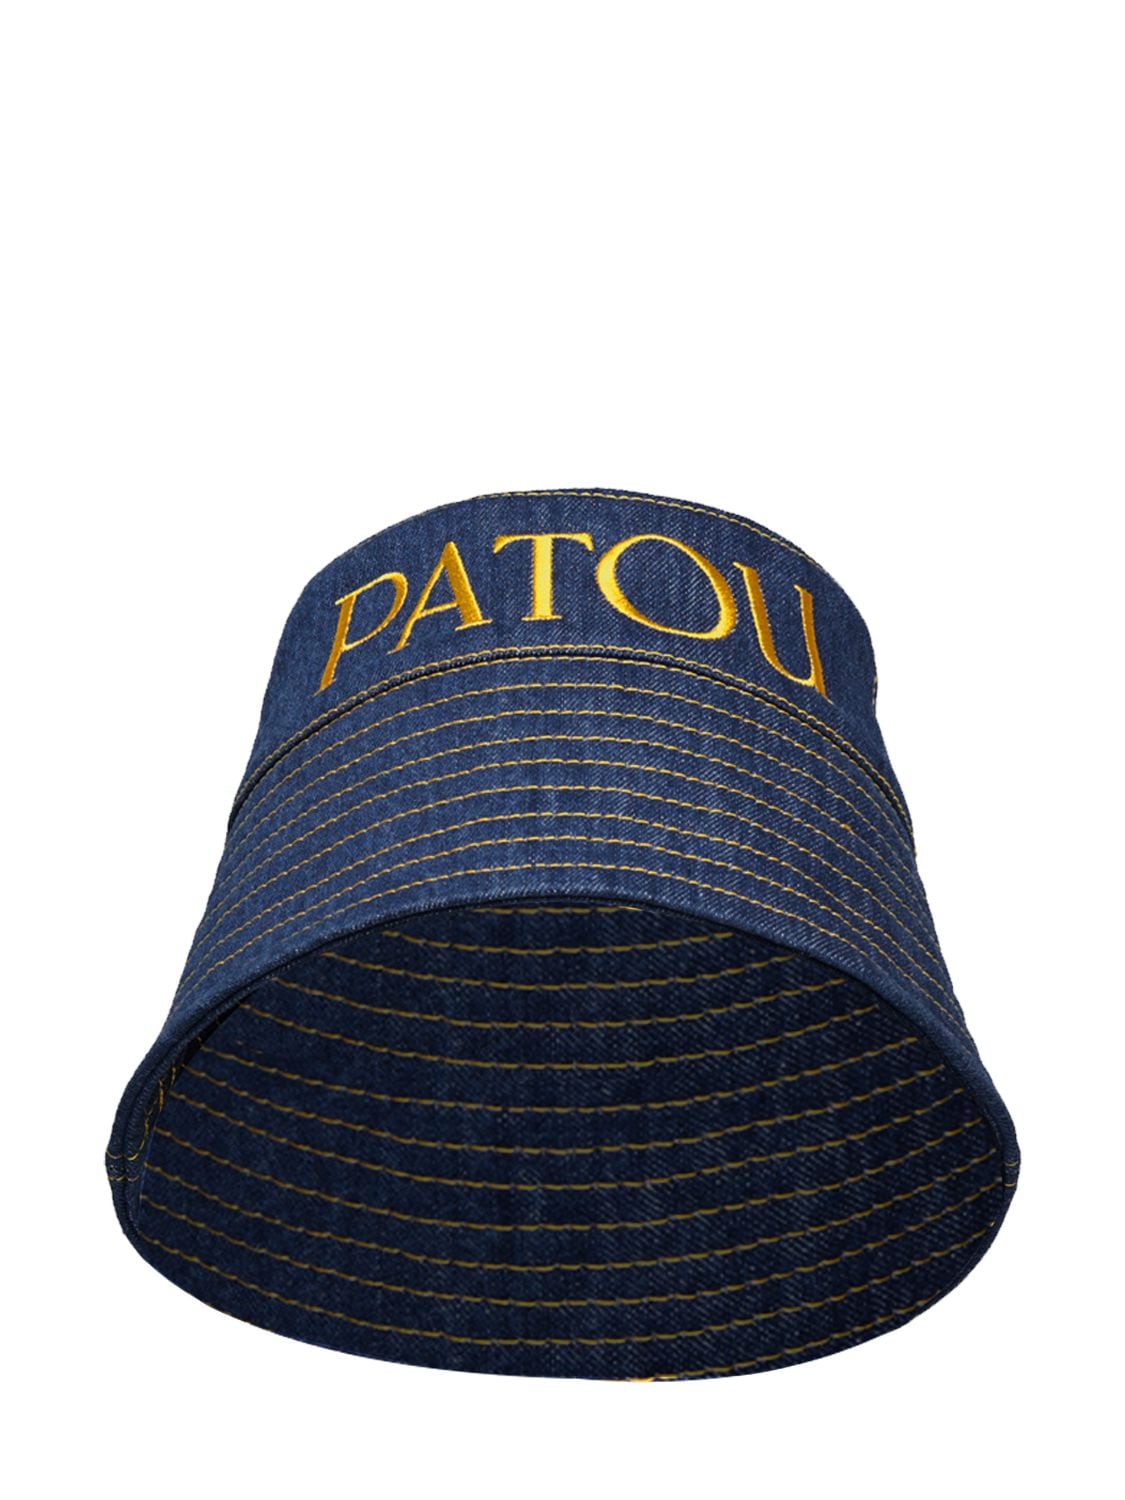 Patou Logo Denim Bucket Hat